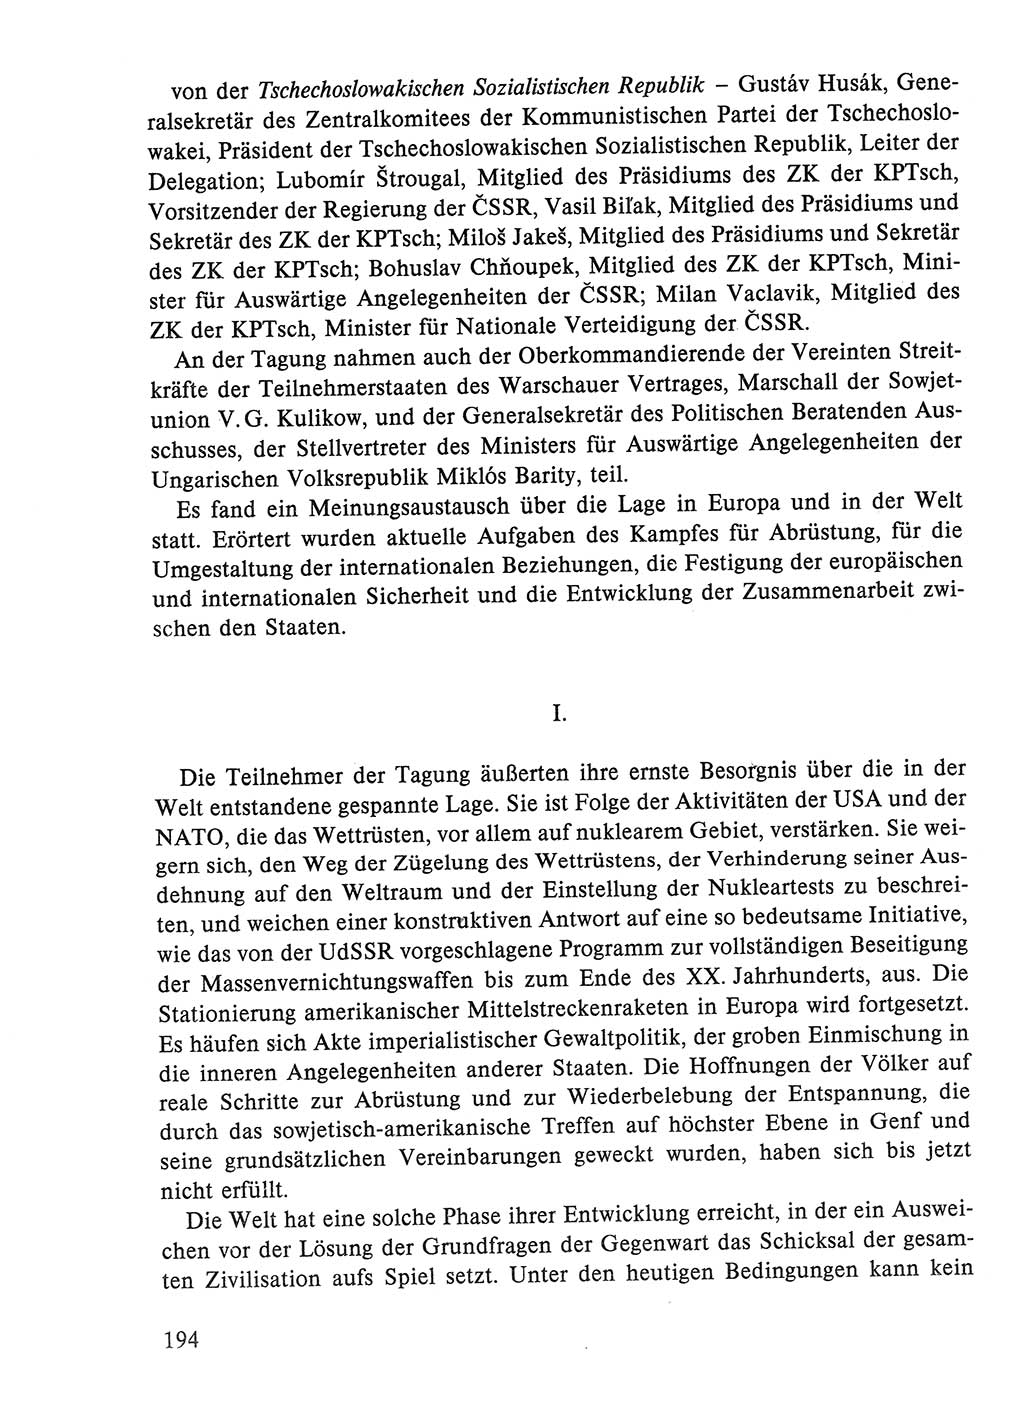 Dokumente der Sozialistischen Einheitspartei Deutschlands (SED) [Deutsche Demokratische Republik (DDR)] 1986-1987, Seite 194 (Dok. SED DDR 1986-1987, S. 194)